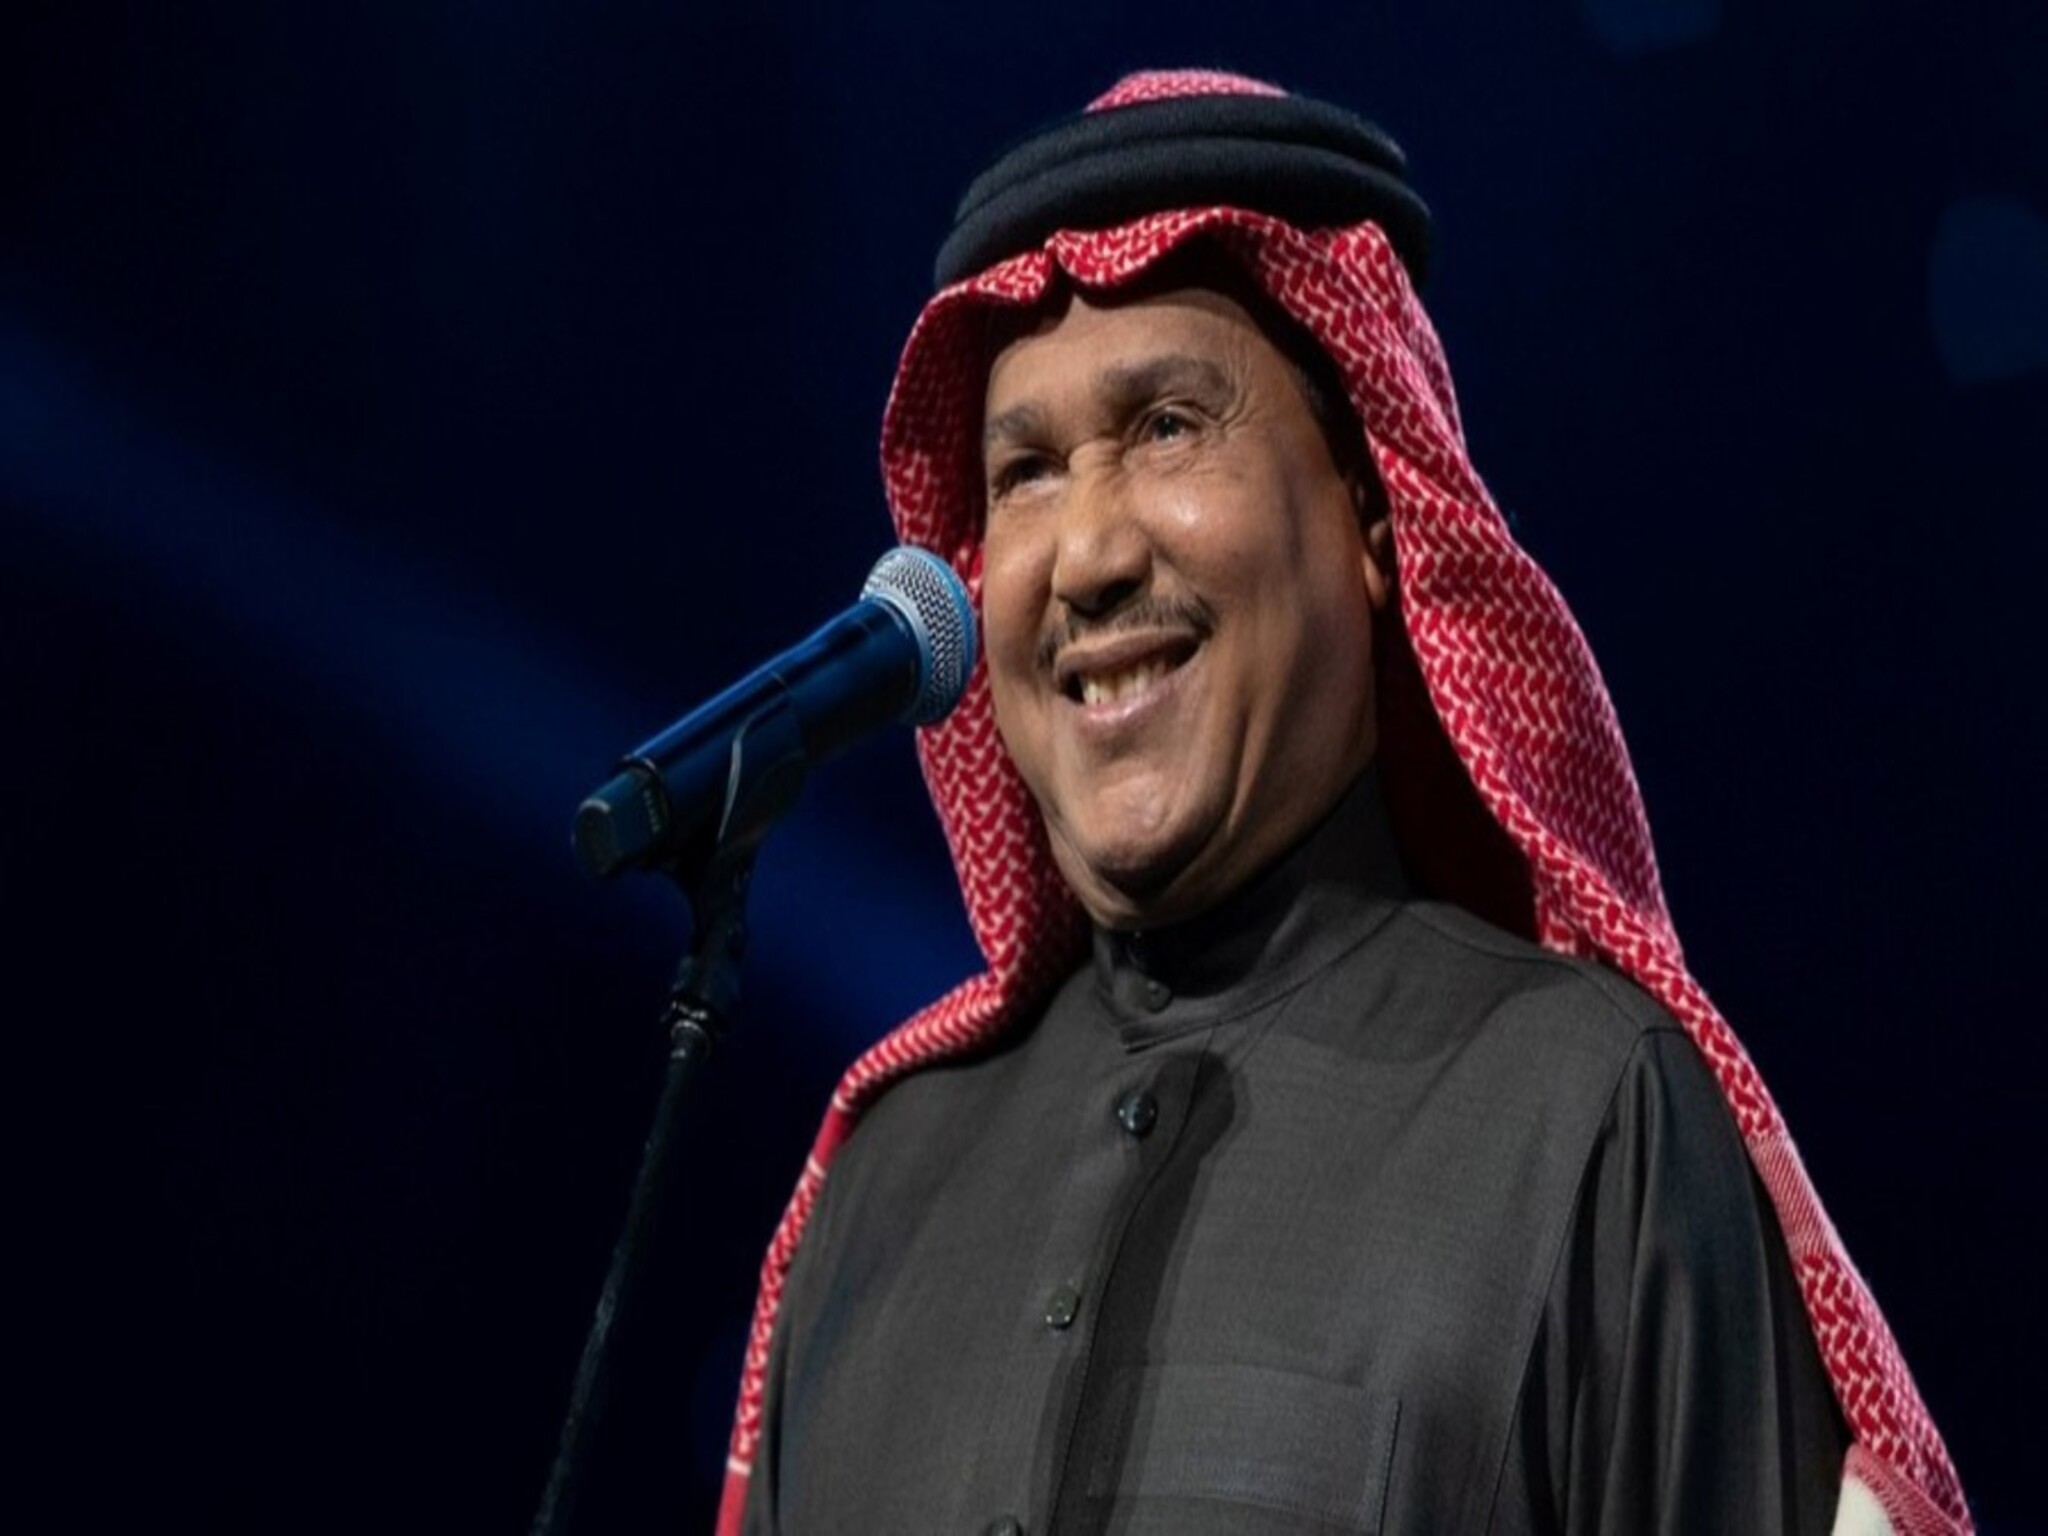 حتى إشعار آخر... تأجيل أنشطة الفنان السعودي "محمد عبده"